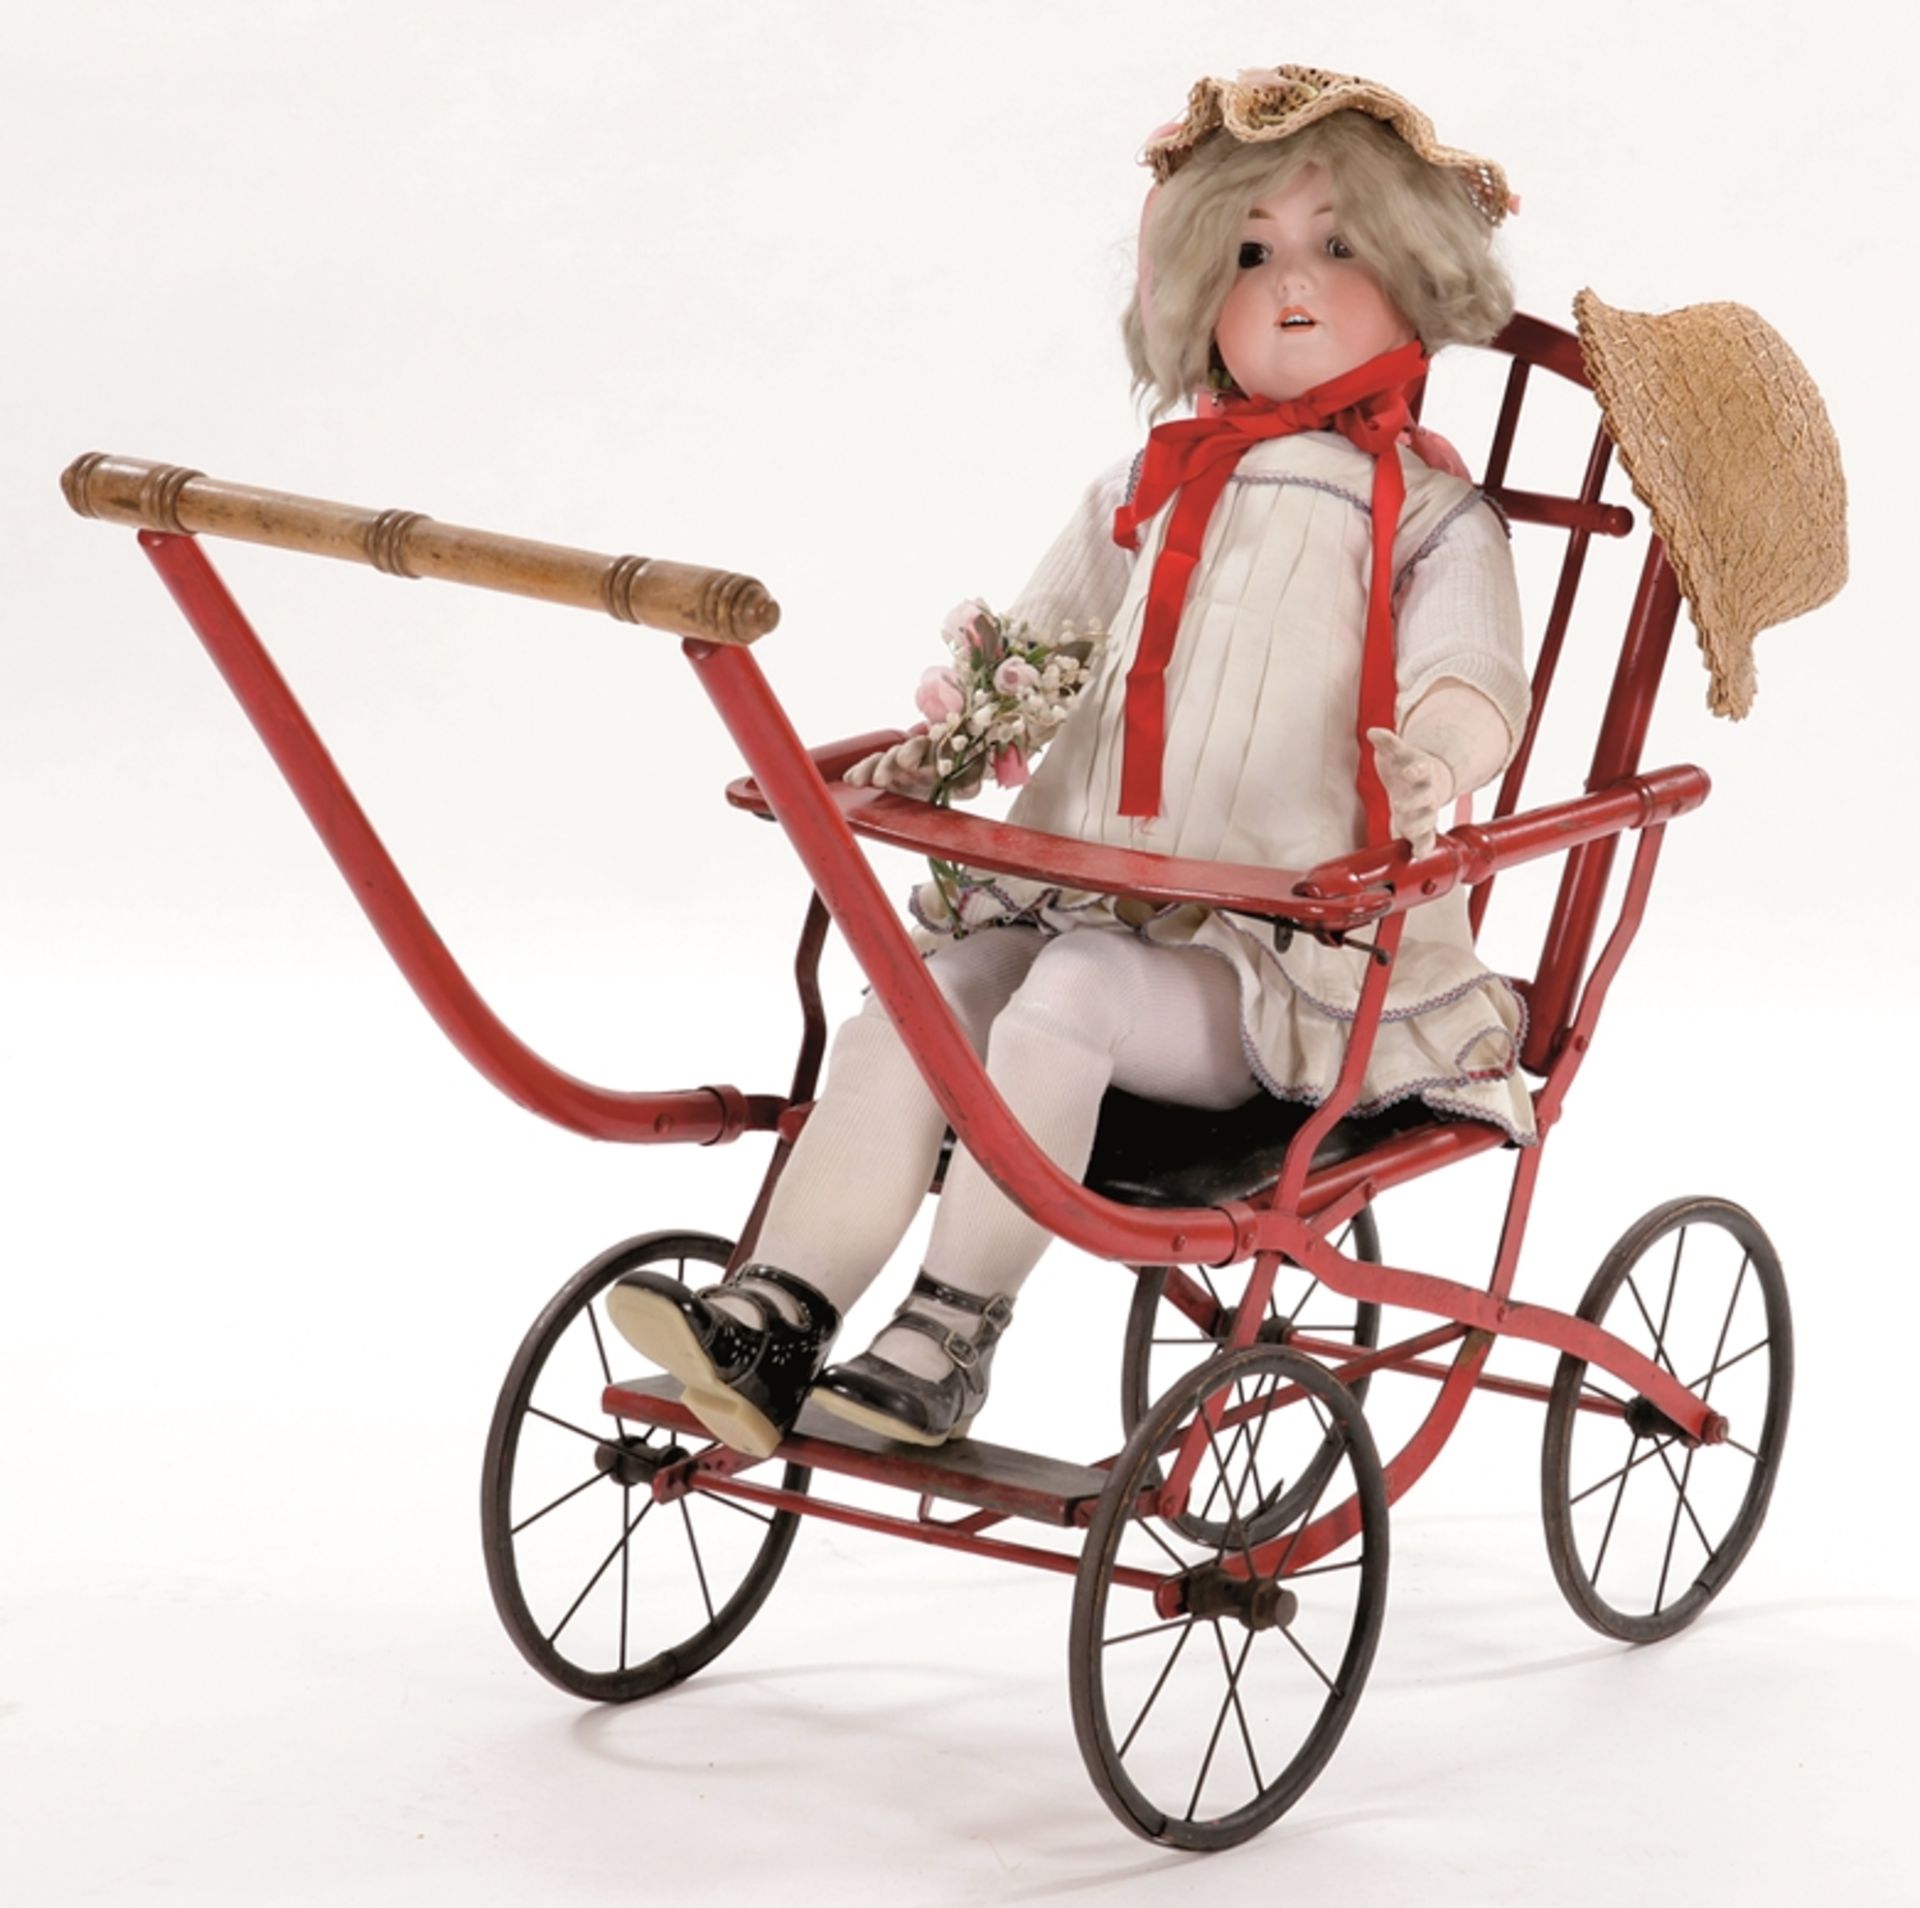 Puppe im Kinderwagen